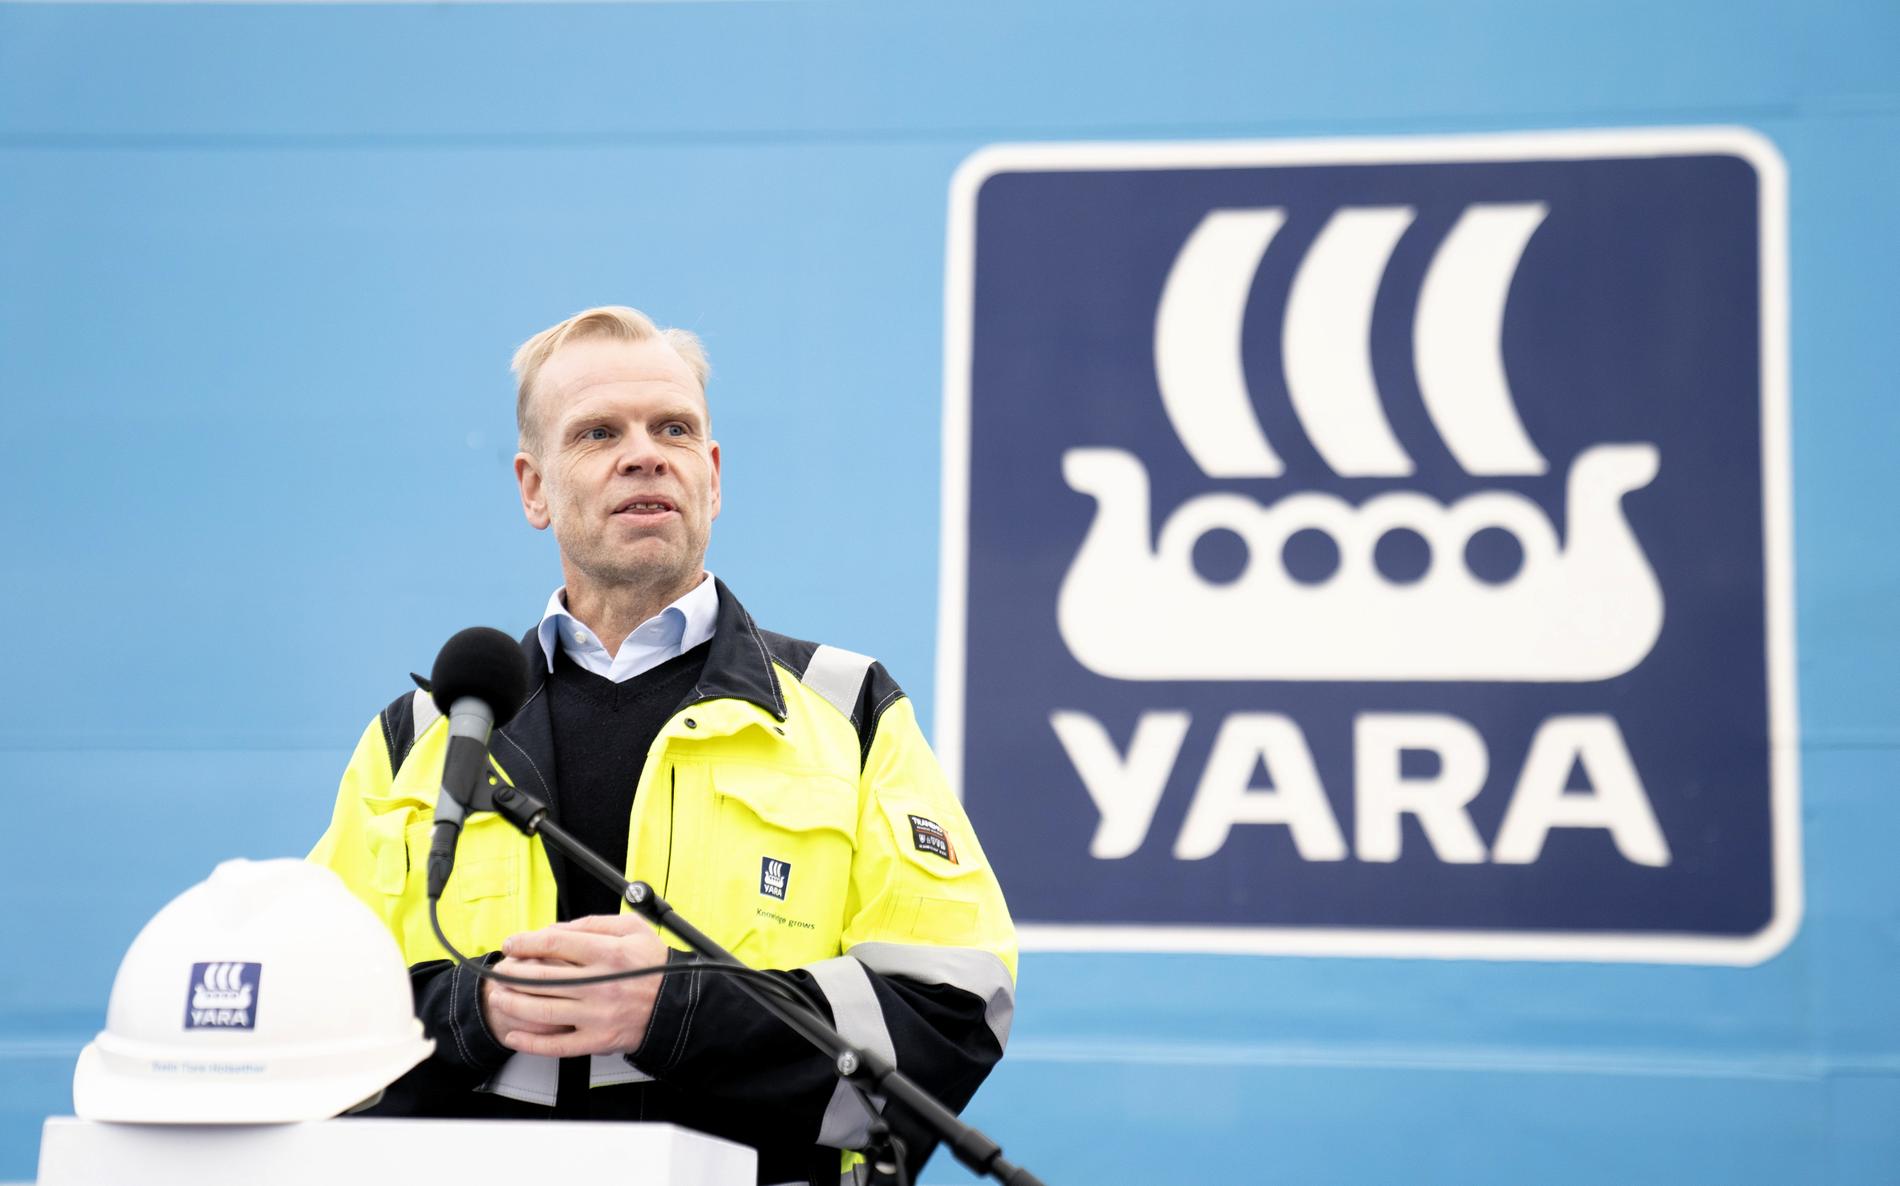 Yara-sjef og NHO-president Svein Tore Holsether ser et problem i at mange kommuner gjerne sier ja til industri som vil bruke mye kraft, men samtidig sier nei til å bygge ut kraft. Den likningen får han ikke til å gå opp.